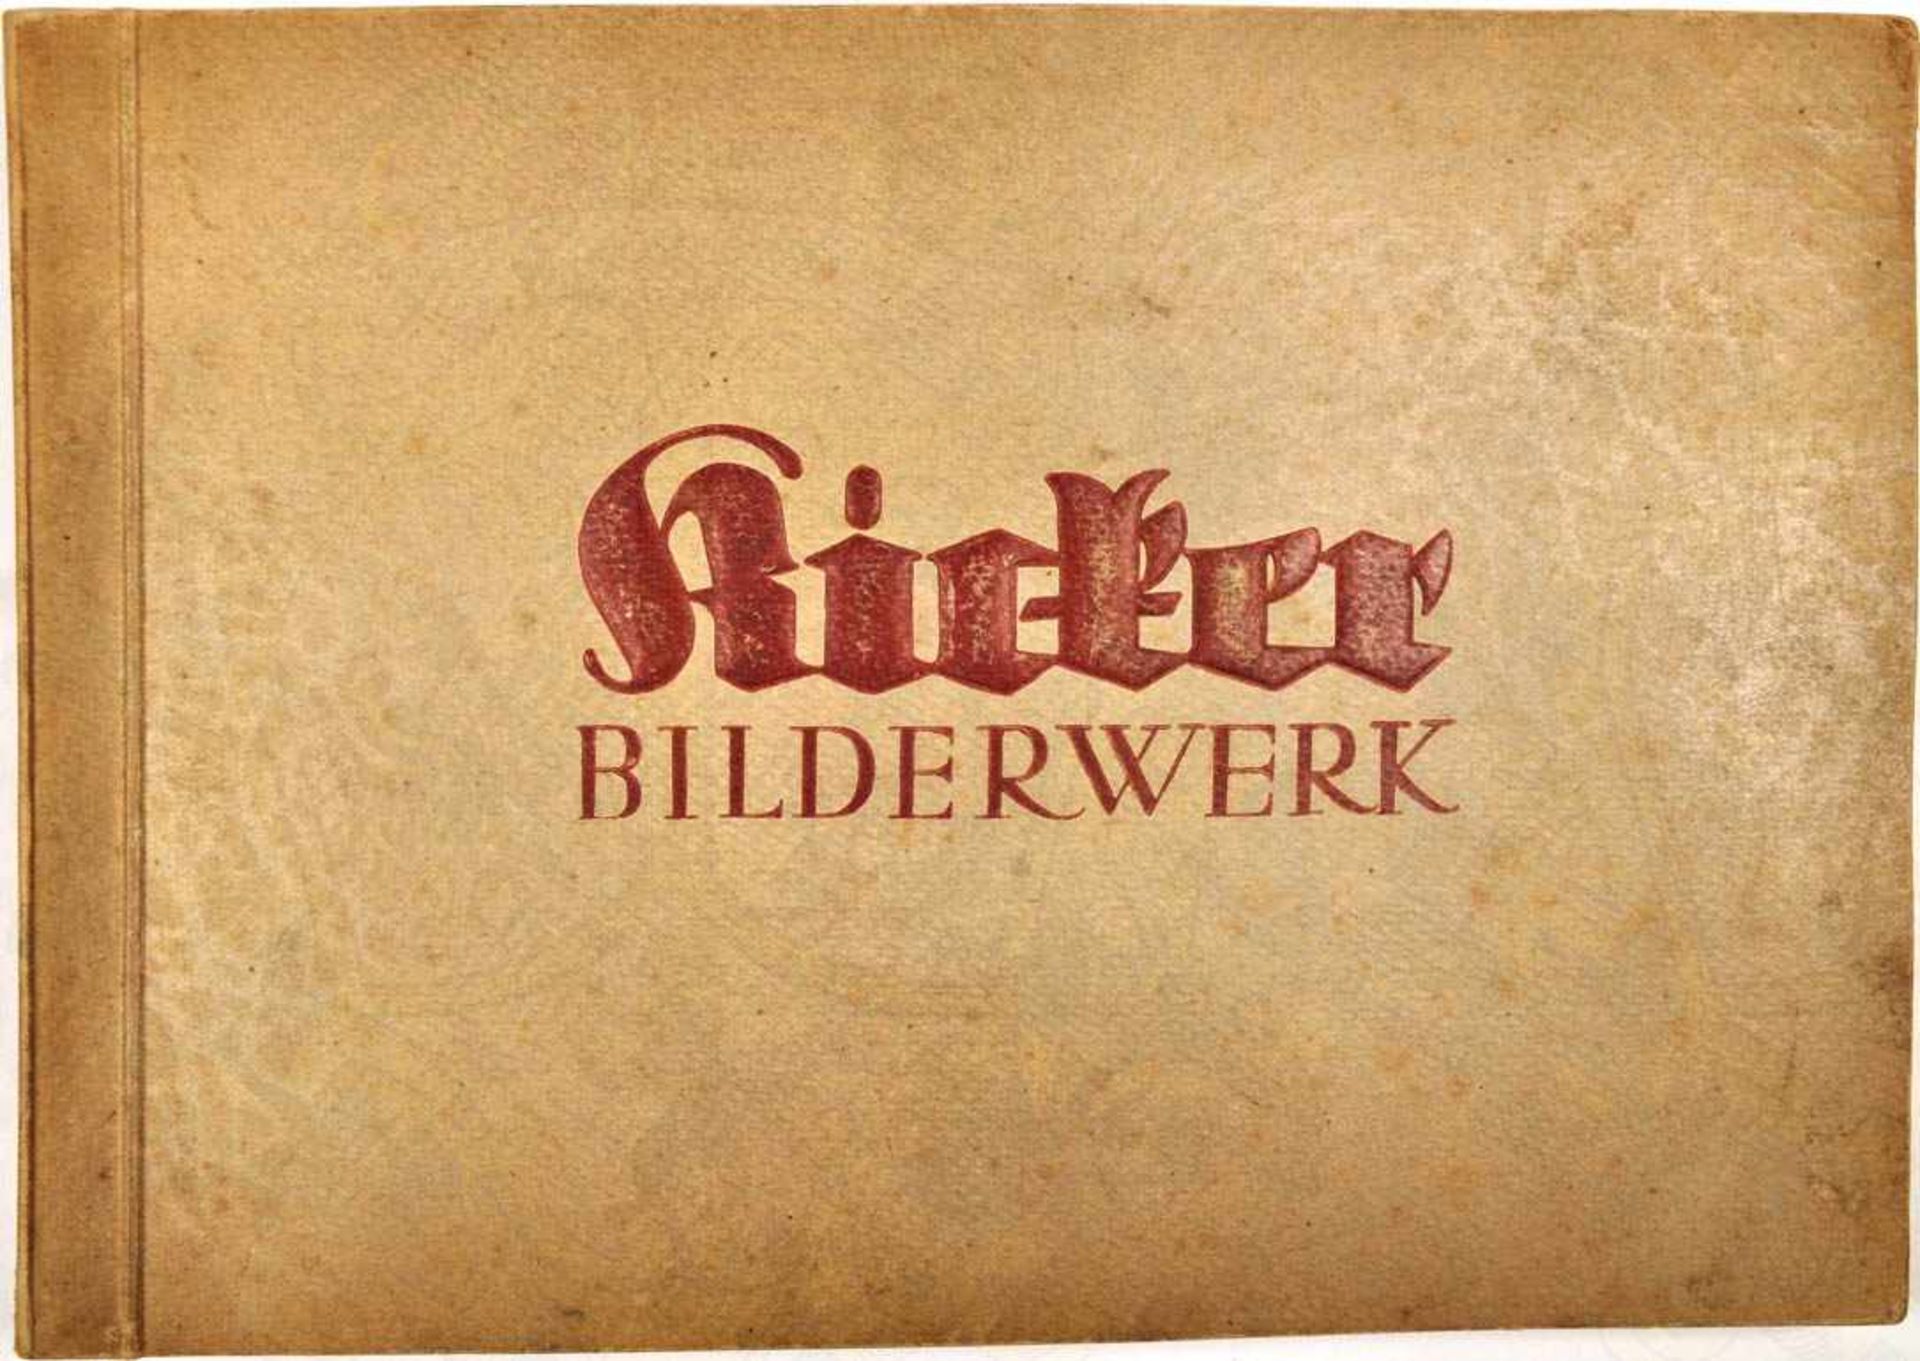 KICKER-BILDWERK - DIE DEUTSCHEN NATIONALSPIELER, Nürnberg 1940, m. ges. 402 von 404 Bildern, inkl.